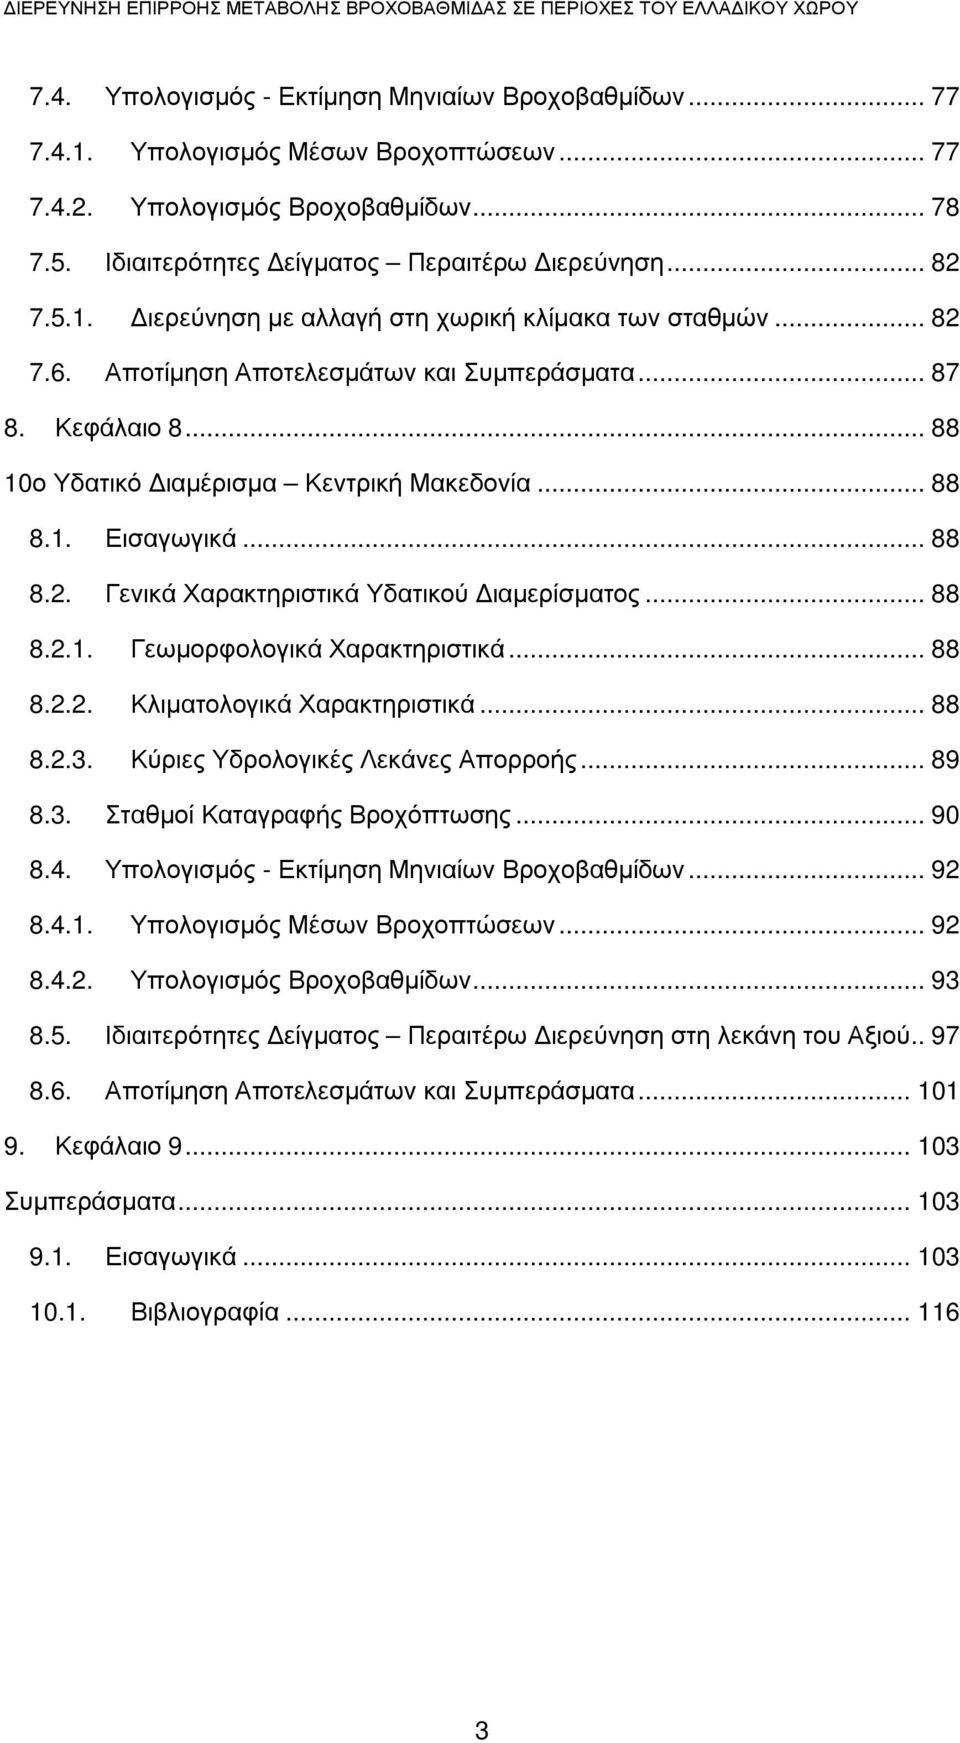 .. 87 8. Κεφάλαιο 8... 88 10ο Υδατικό ιαµέρισµα Κεντρική Μακεδονία... 88 8.1. Εισαγωγικά... 88 8.2. Γενικά Χαρακτηριστικά Υδατικού ιαµερίσµατος... 88 8.2.1. Γεωµορφολογικά Χαρακτηριστικά... 88 8.2.2. Κλιµατολογικά Χαρακτηριστικά.